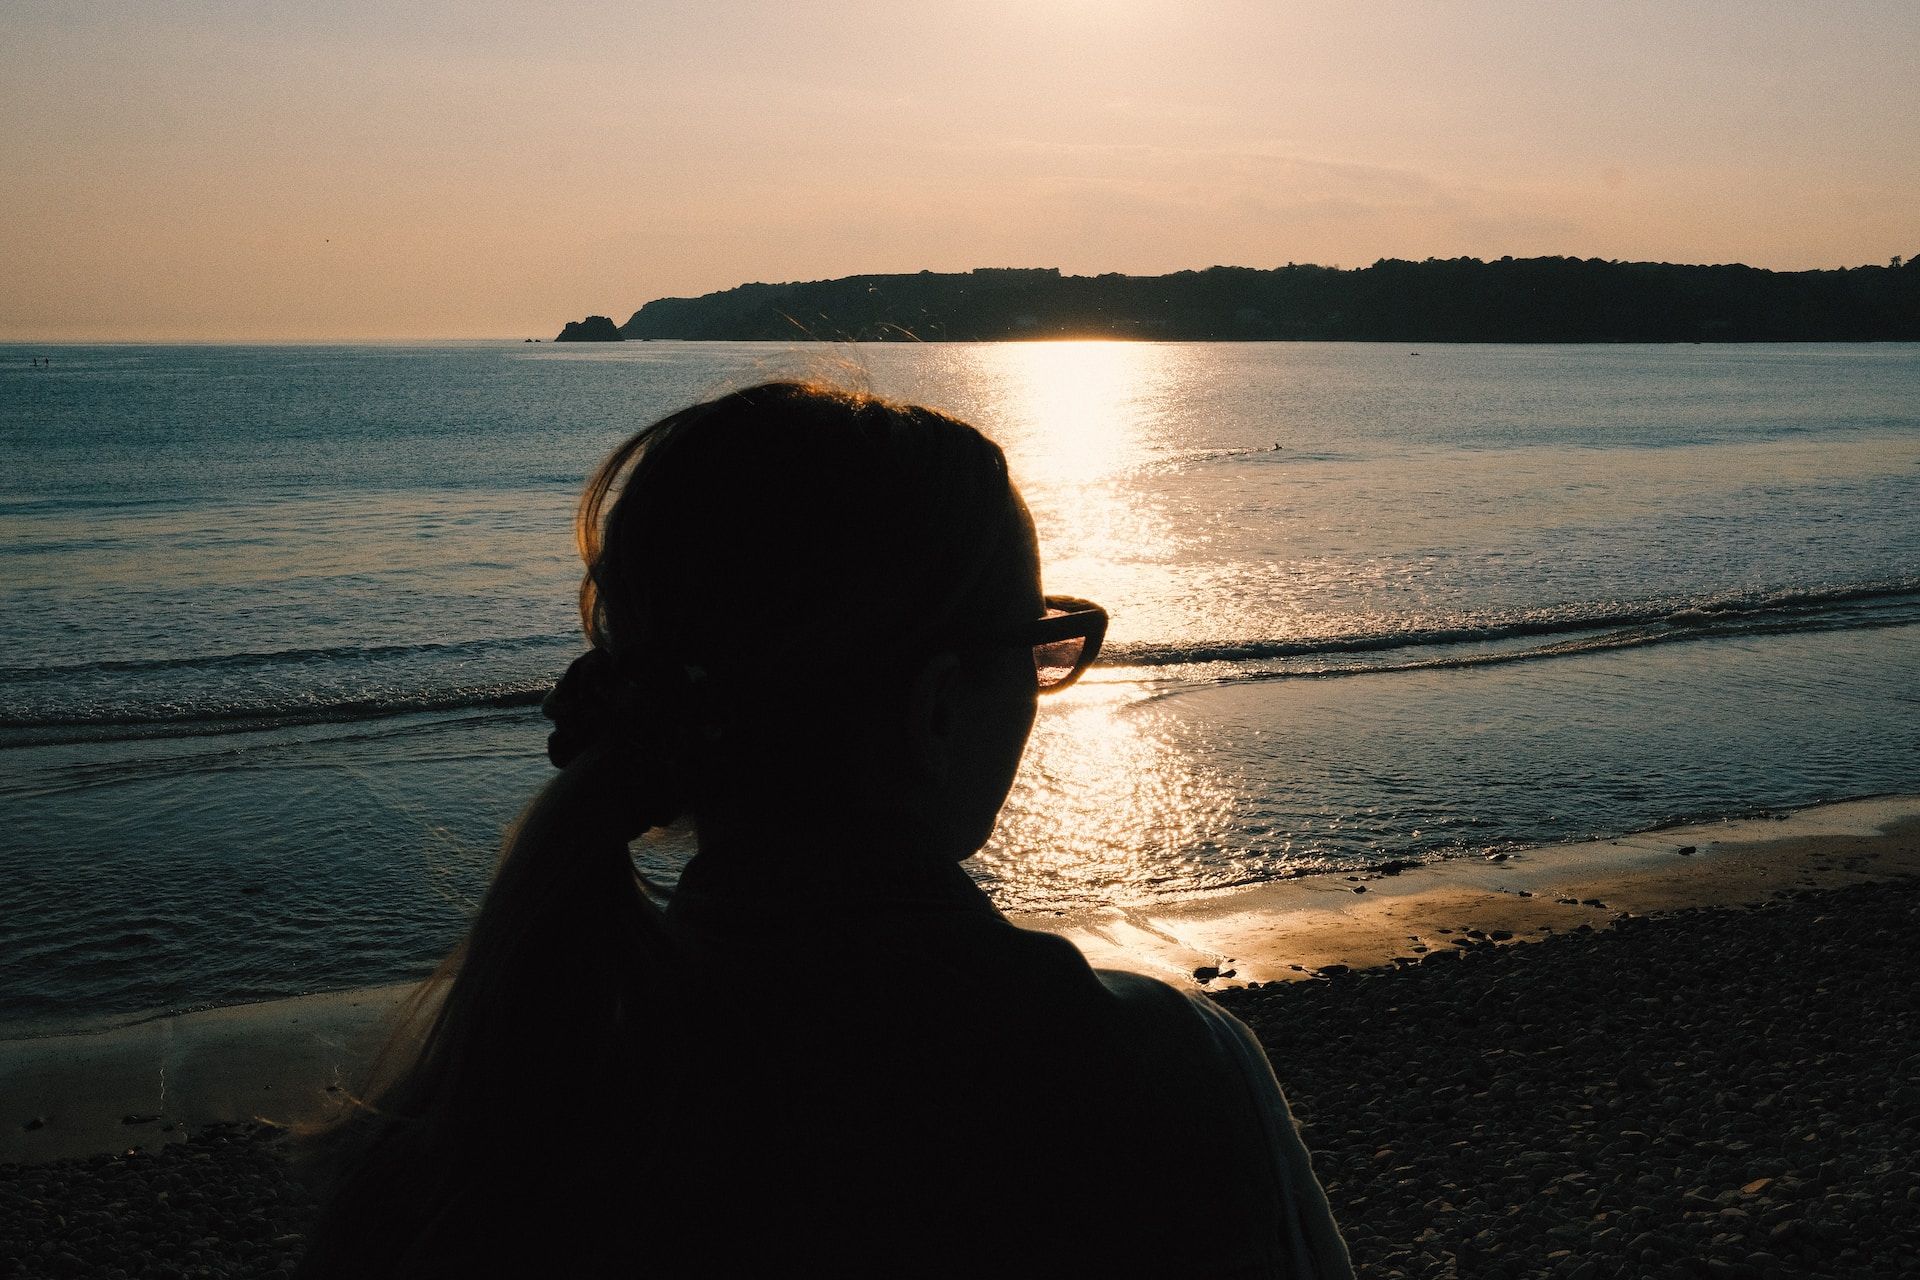 femme regardant un coucher de soleil sur l'océan - Photo by Luke Moss on https://unsplash.com/fr/photos/silhouette-de-femme-debout-pres-du-plan-deau-pendant-le-coucher-du-soleil-a5gQtPdzc1U